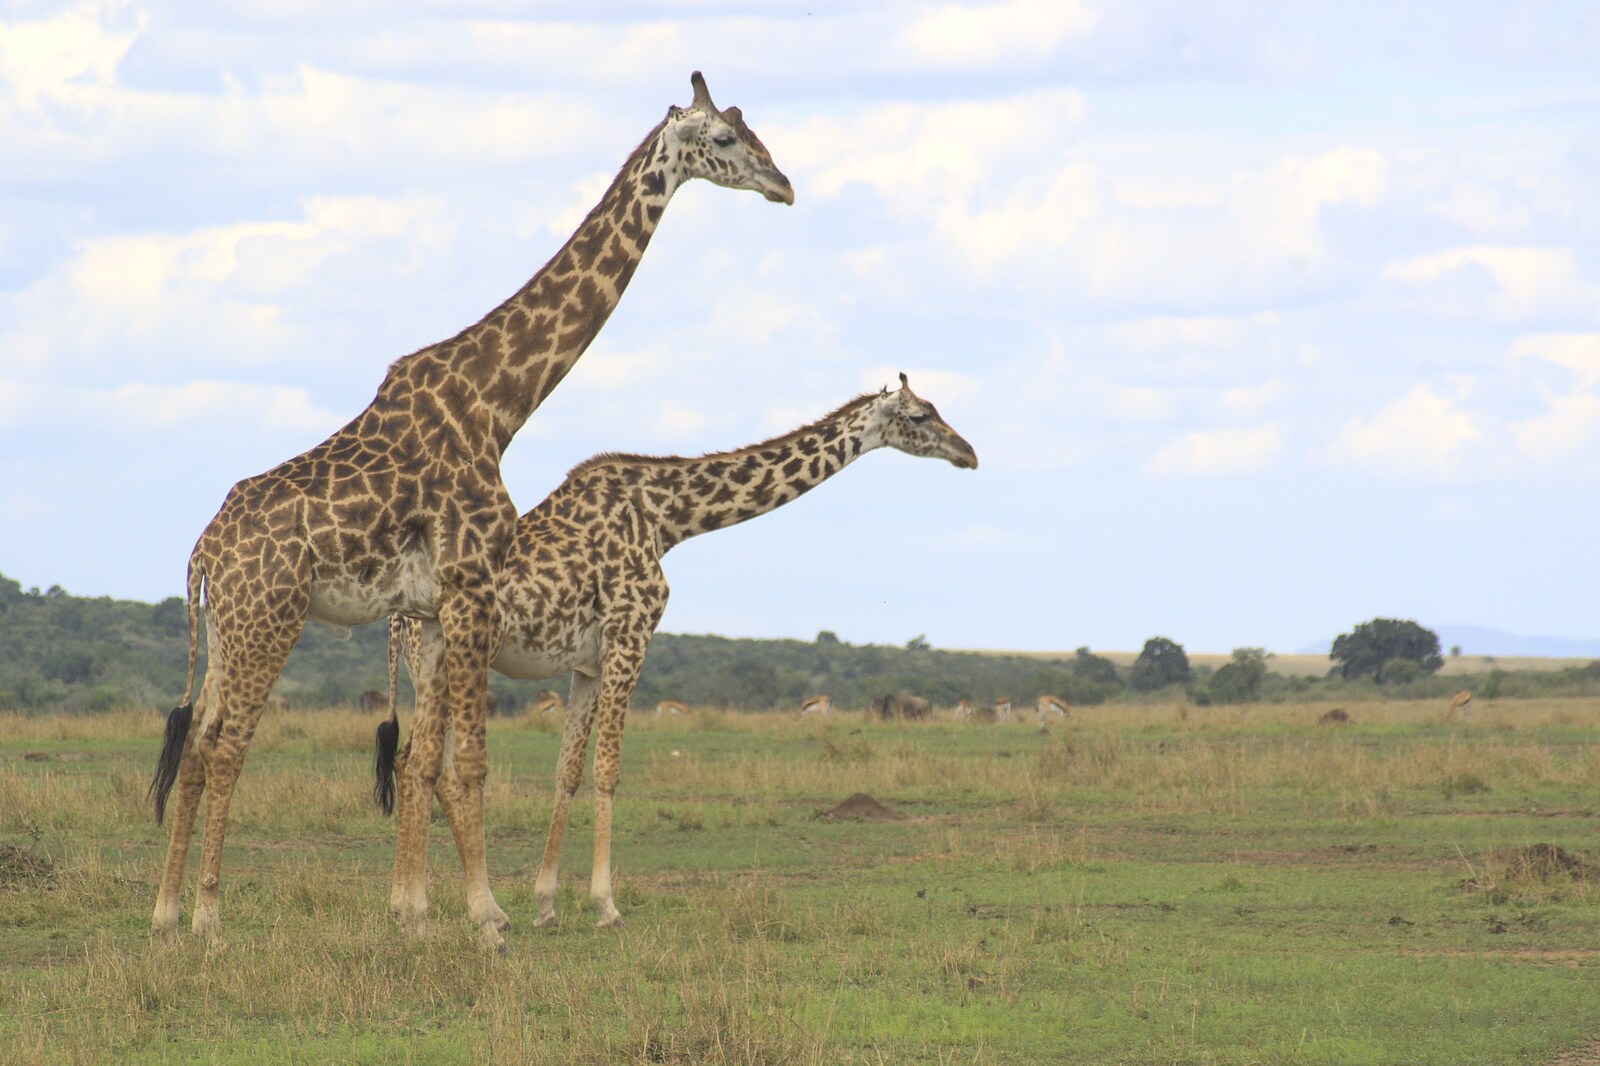 Maasai Mara Safari and a Maasai Village, Ololaimutia, Kenya - 5th November 2010: A pair of giraffe